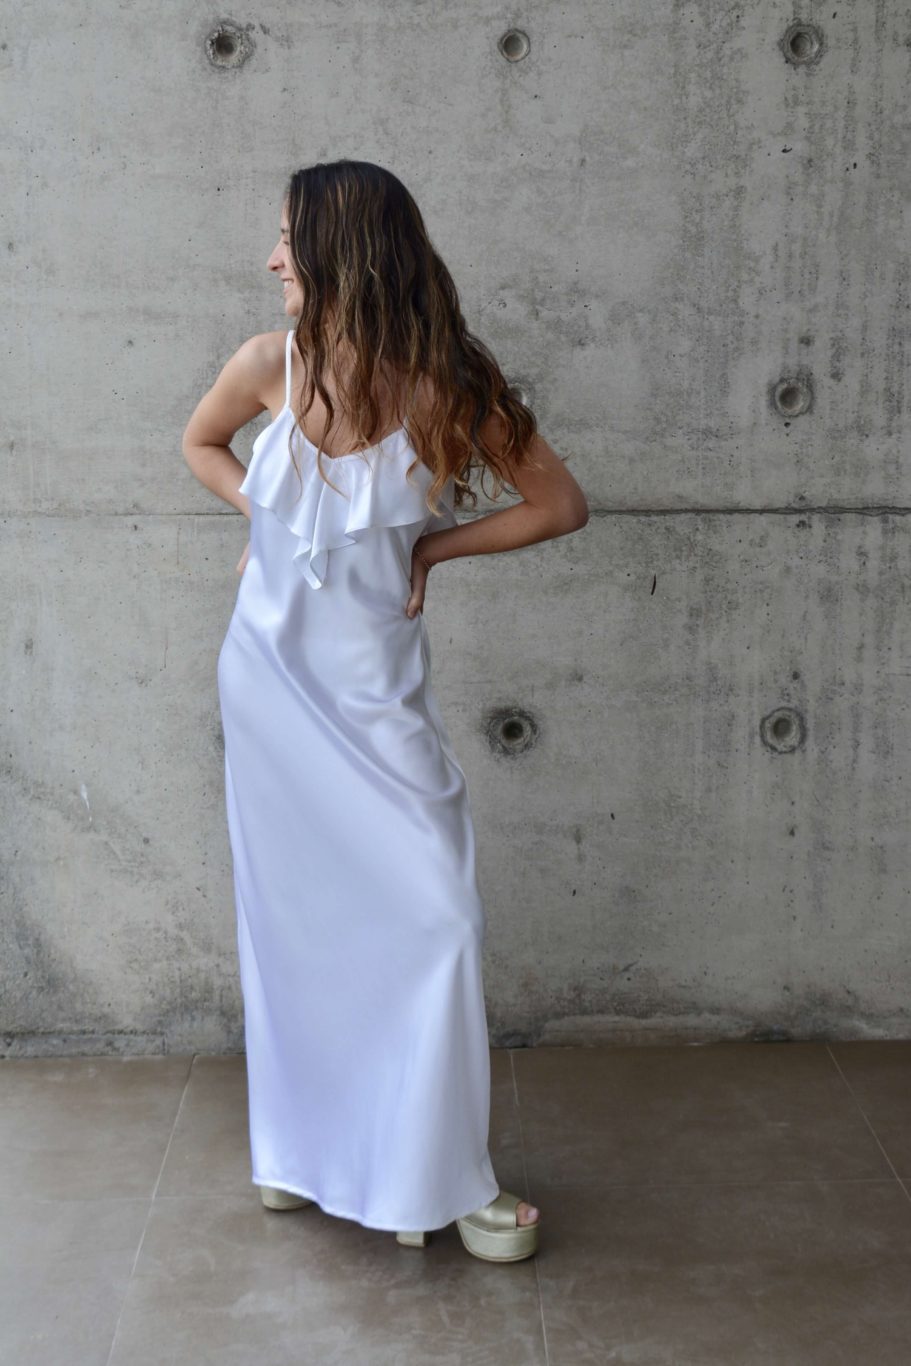 pedestal femenino olvidar Vestido largo blanco de seda con vuelos en escote y espalda - Chic Dress  Project